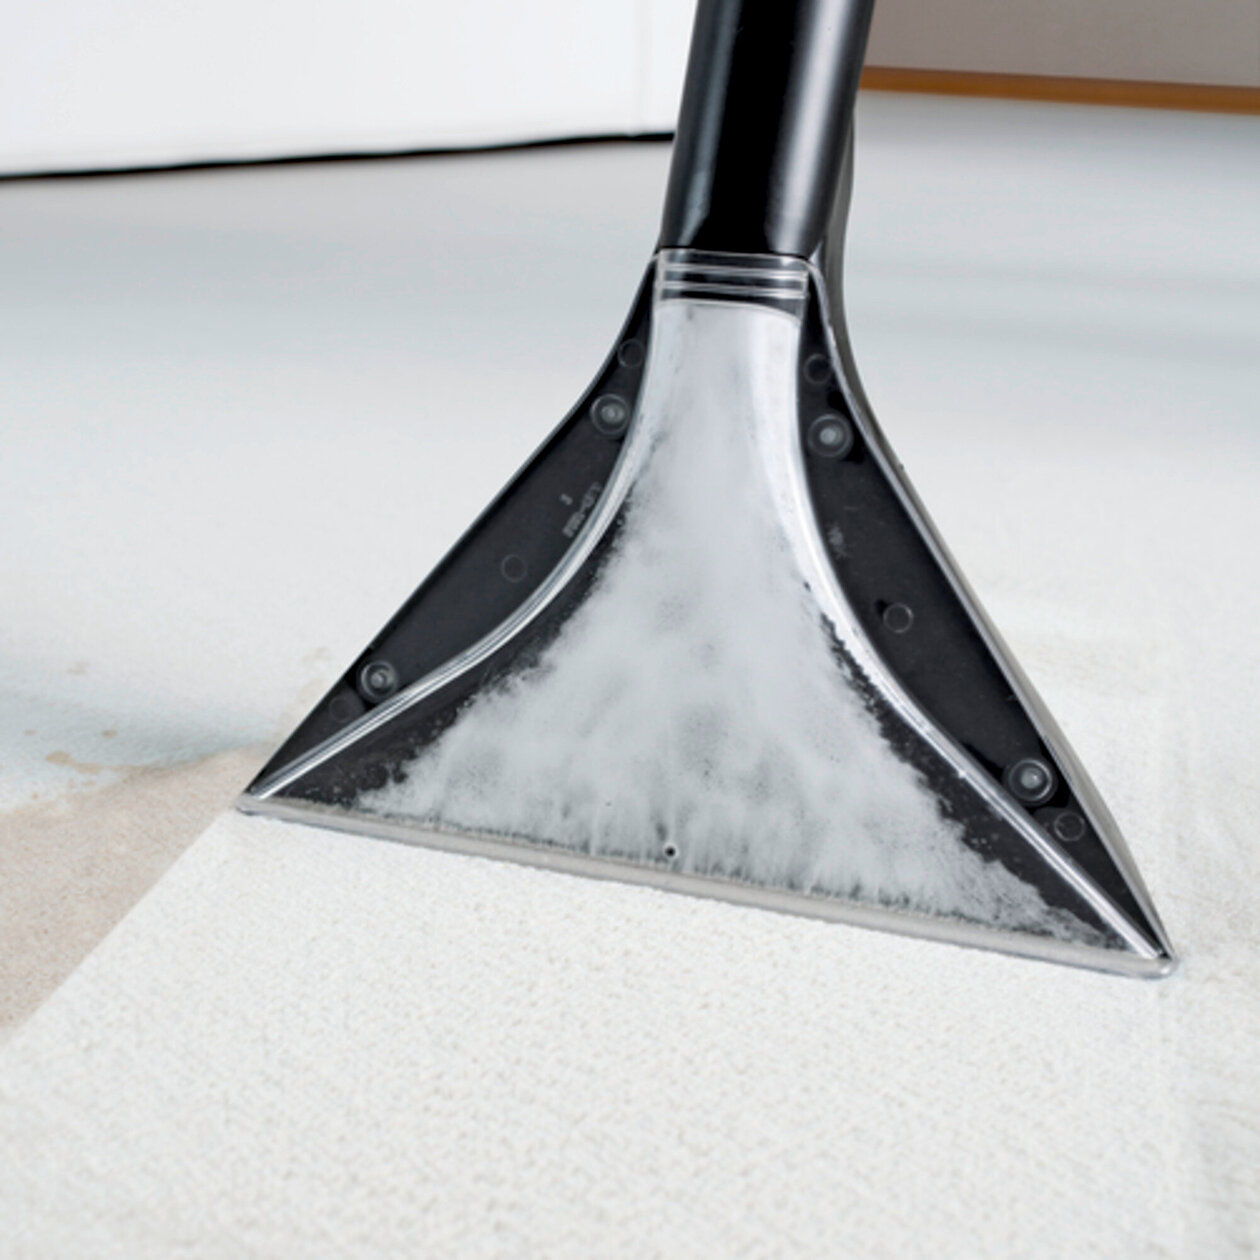 Carpet cleaner SE 4001: Kärcher nozzle technology